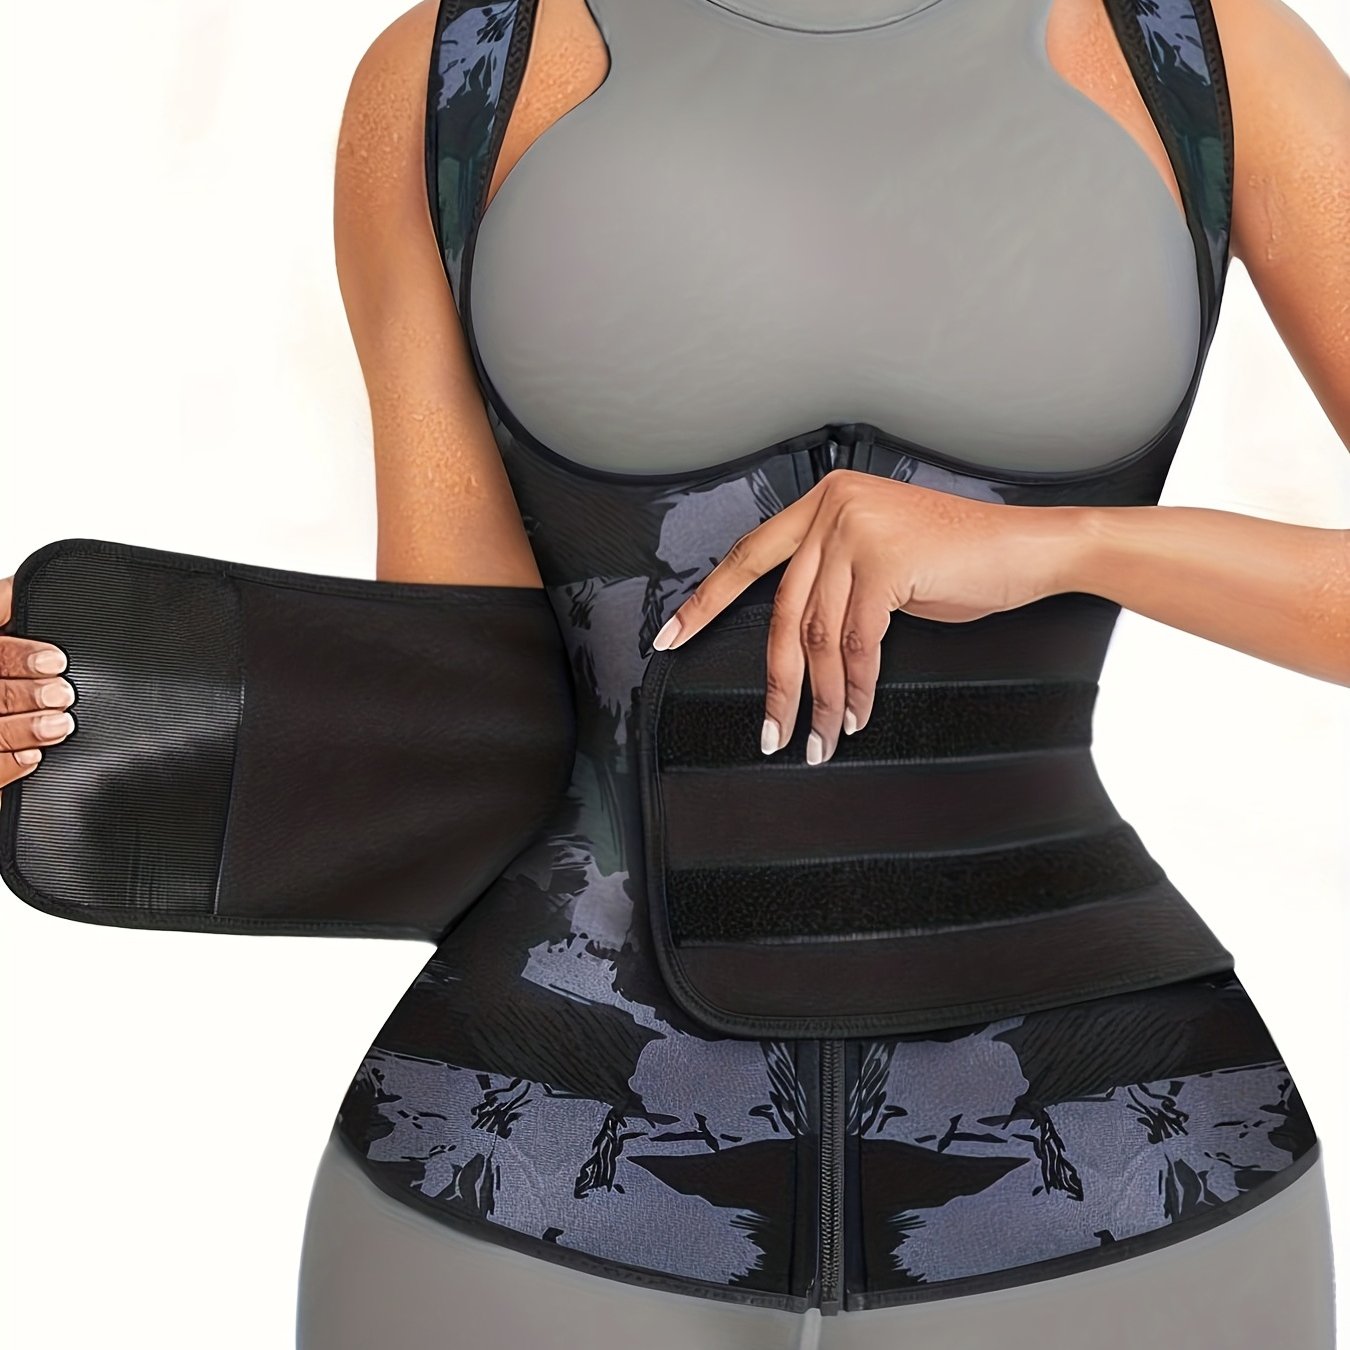 Neoprene Sauna Suit For Women Sauna Sweat Vest Waist Trainer For Women  Zipper Tank Top Vest With Adjustable Belts